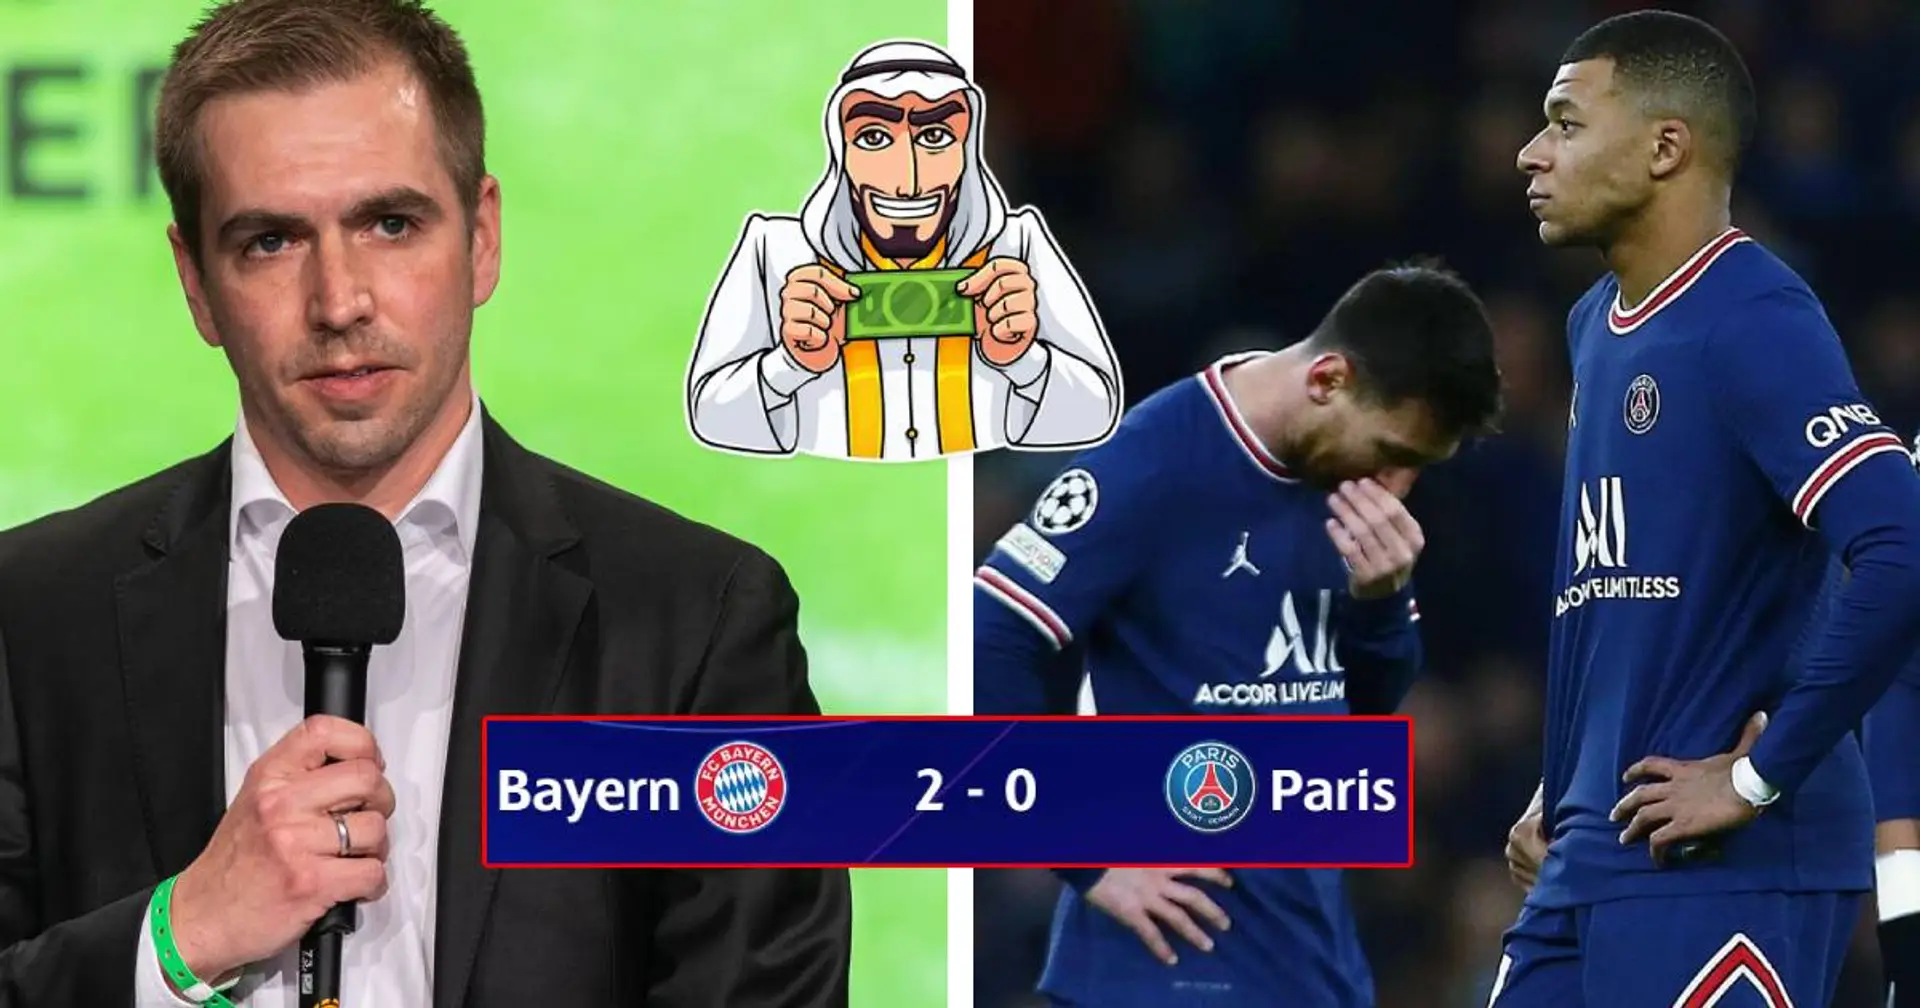 "Pas inspiré et pas d'équipe": Lahm démonte le PSG, Messi & Mbappé après l'élimination en LDC vs Bayern